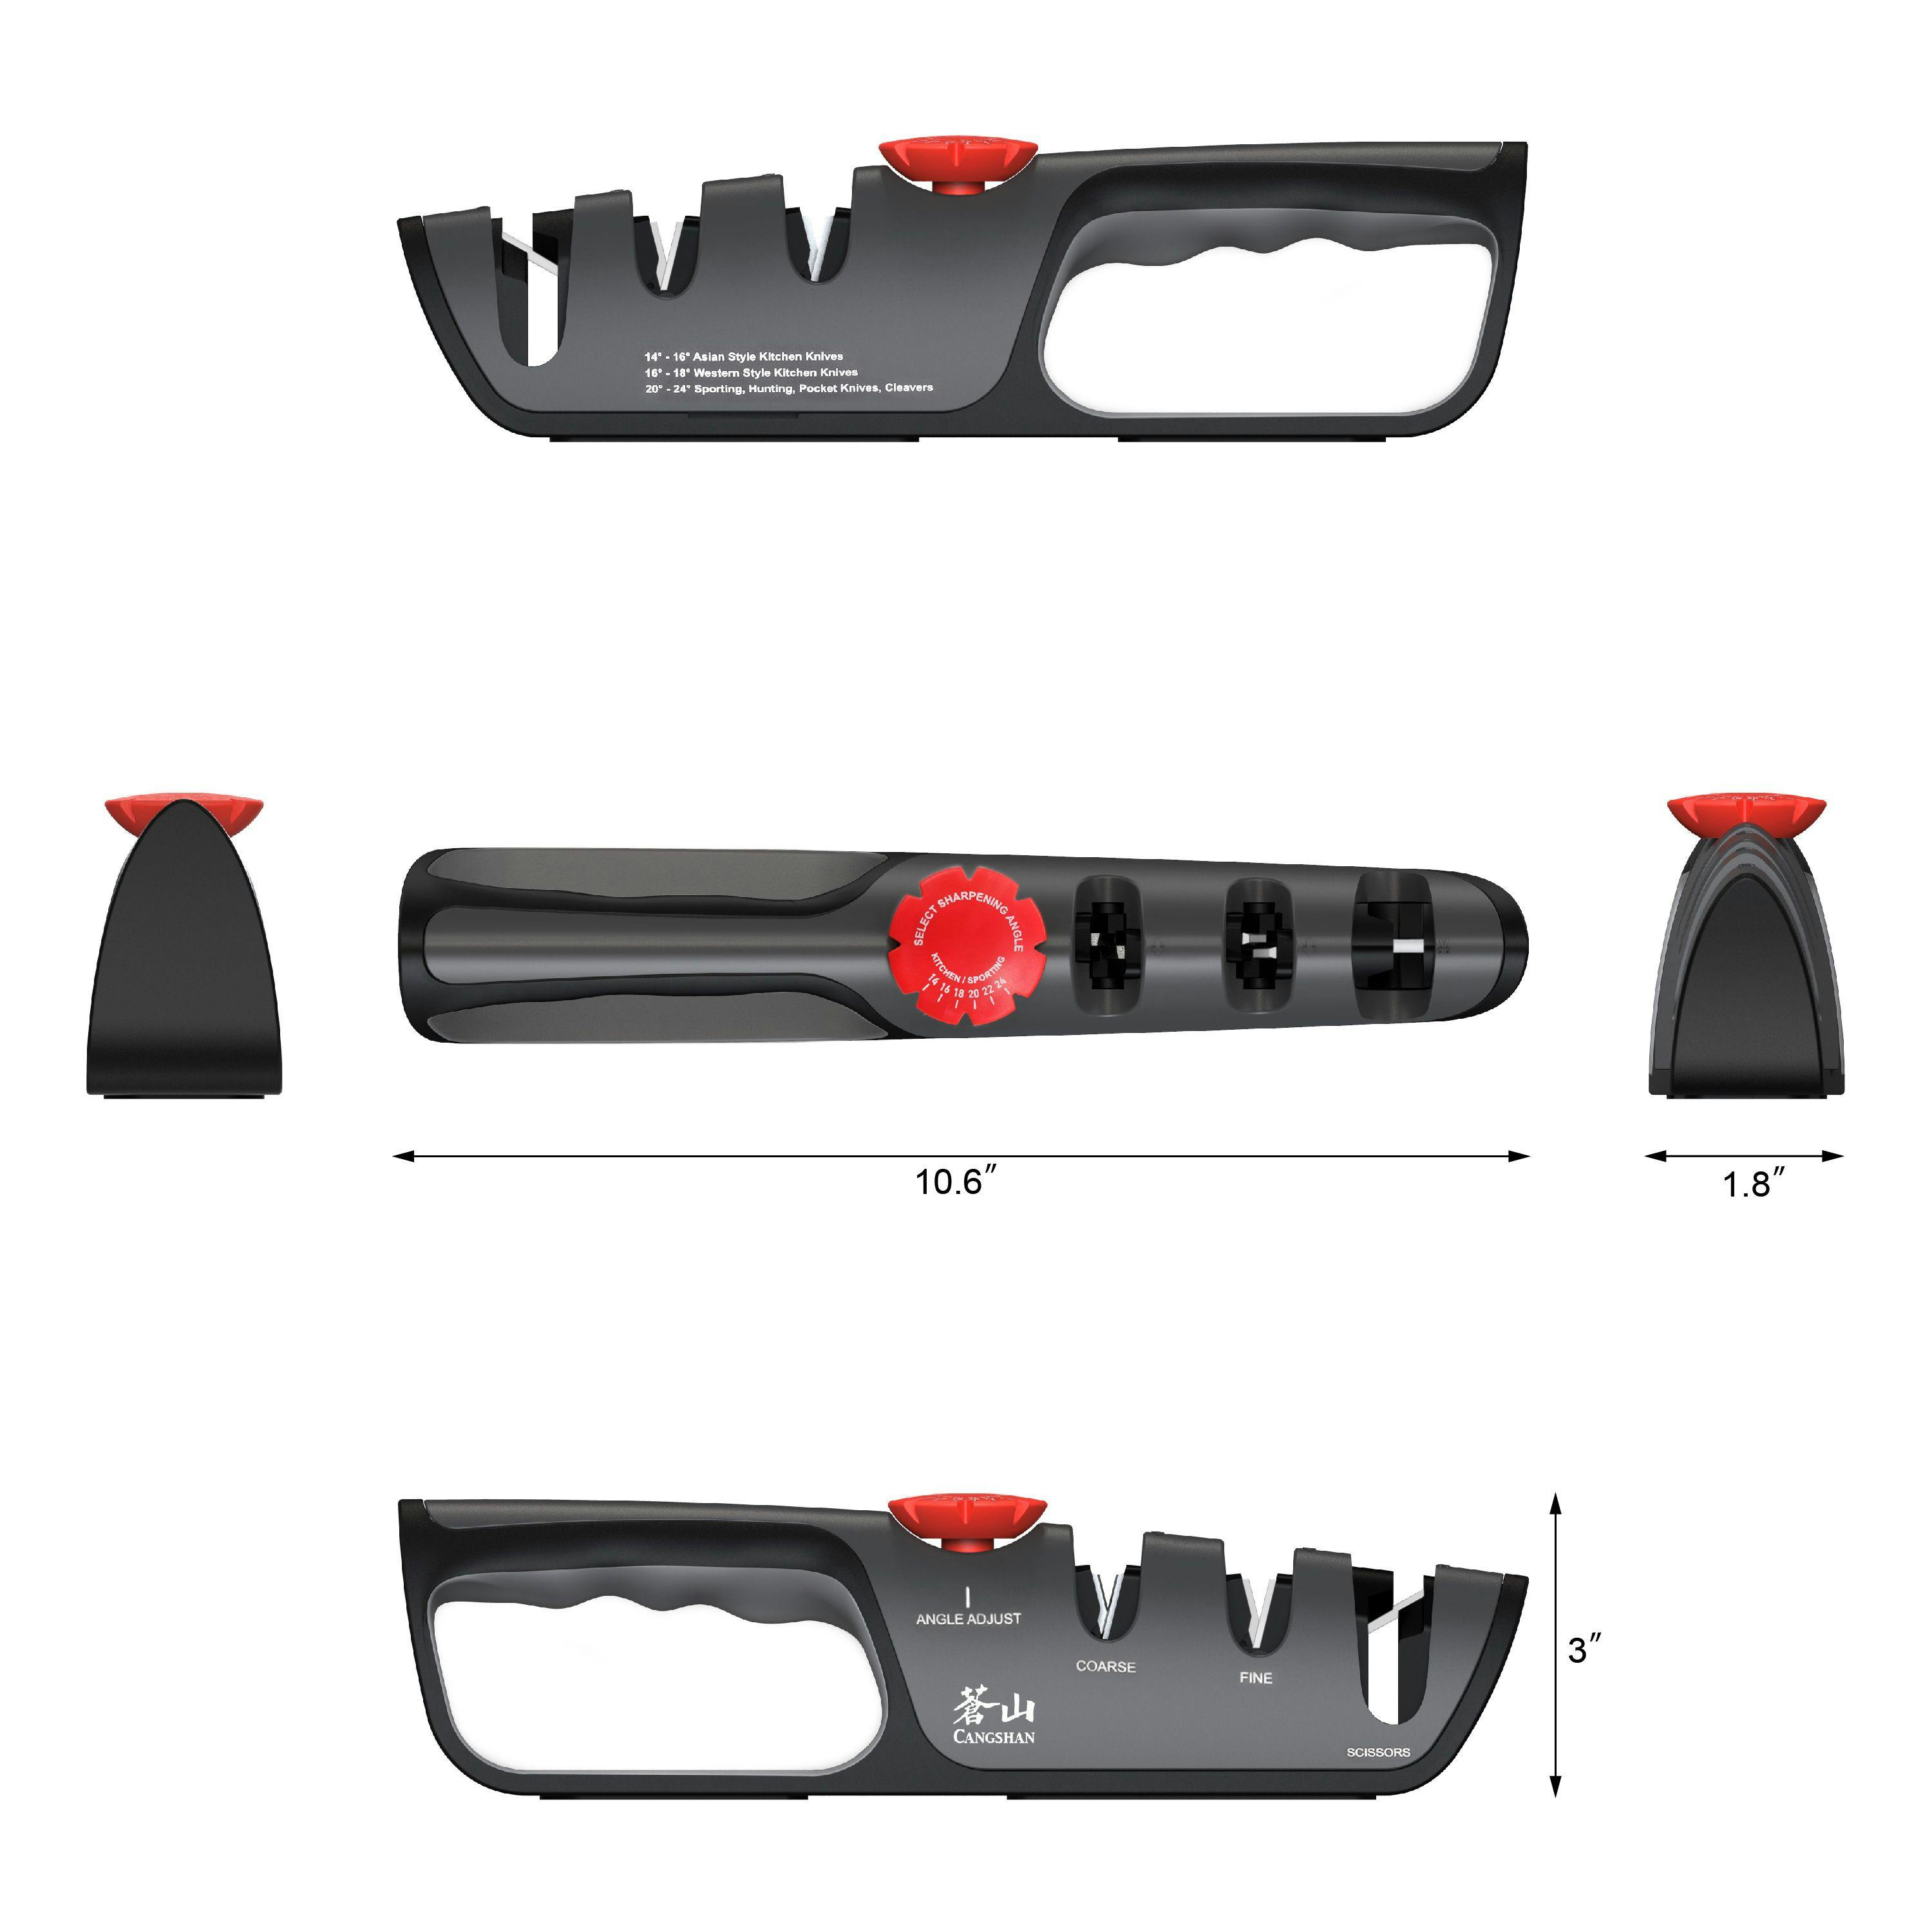 Cangshan Adjustable Knife Sharpener + Scissor Sharpener